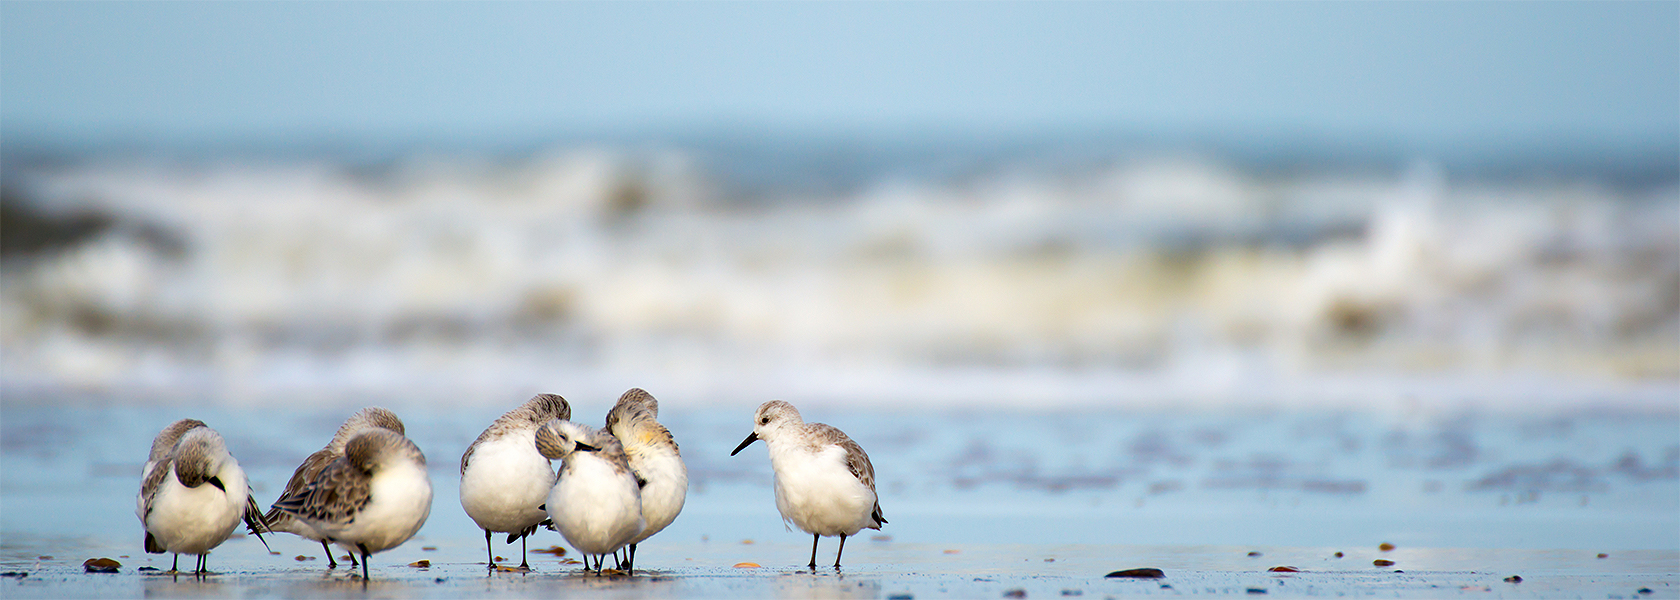 Vögel am Strand der Nordsee